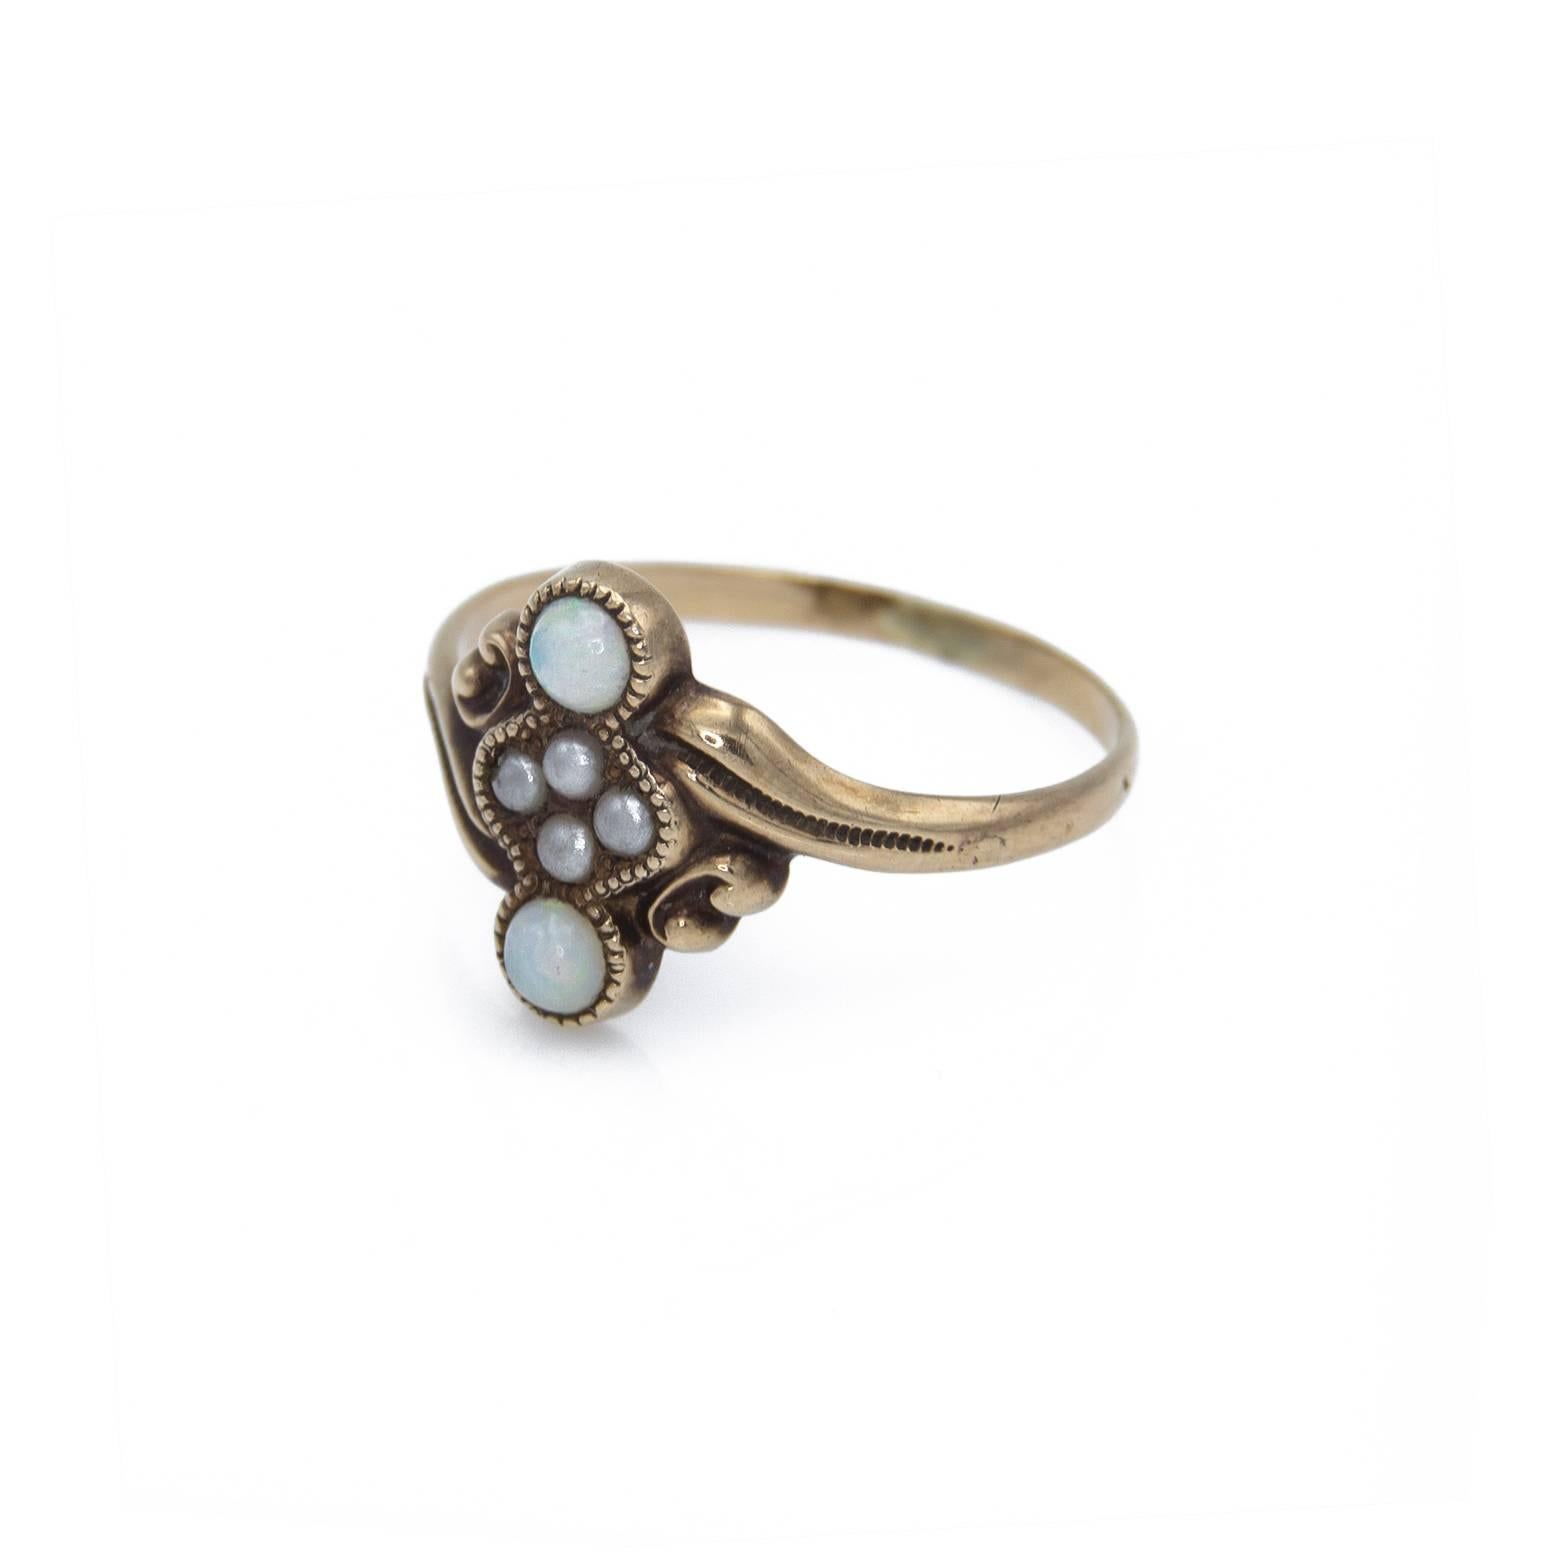 Dieser zart gefasste Ring mit Opal und Süßwasserperle hat einen schönen Wirbel, der in 10k antikisiert ist. Der Gesamteffekt ist süß und schön ....Das perfekte Geschenk für eine junge Frau.